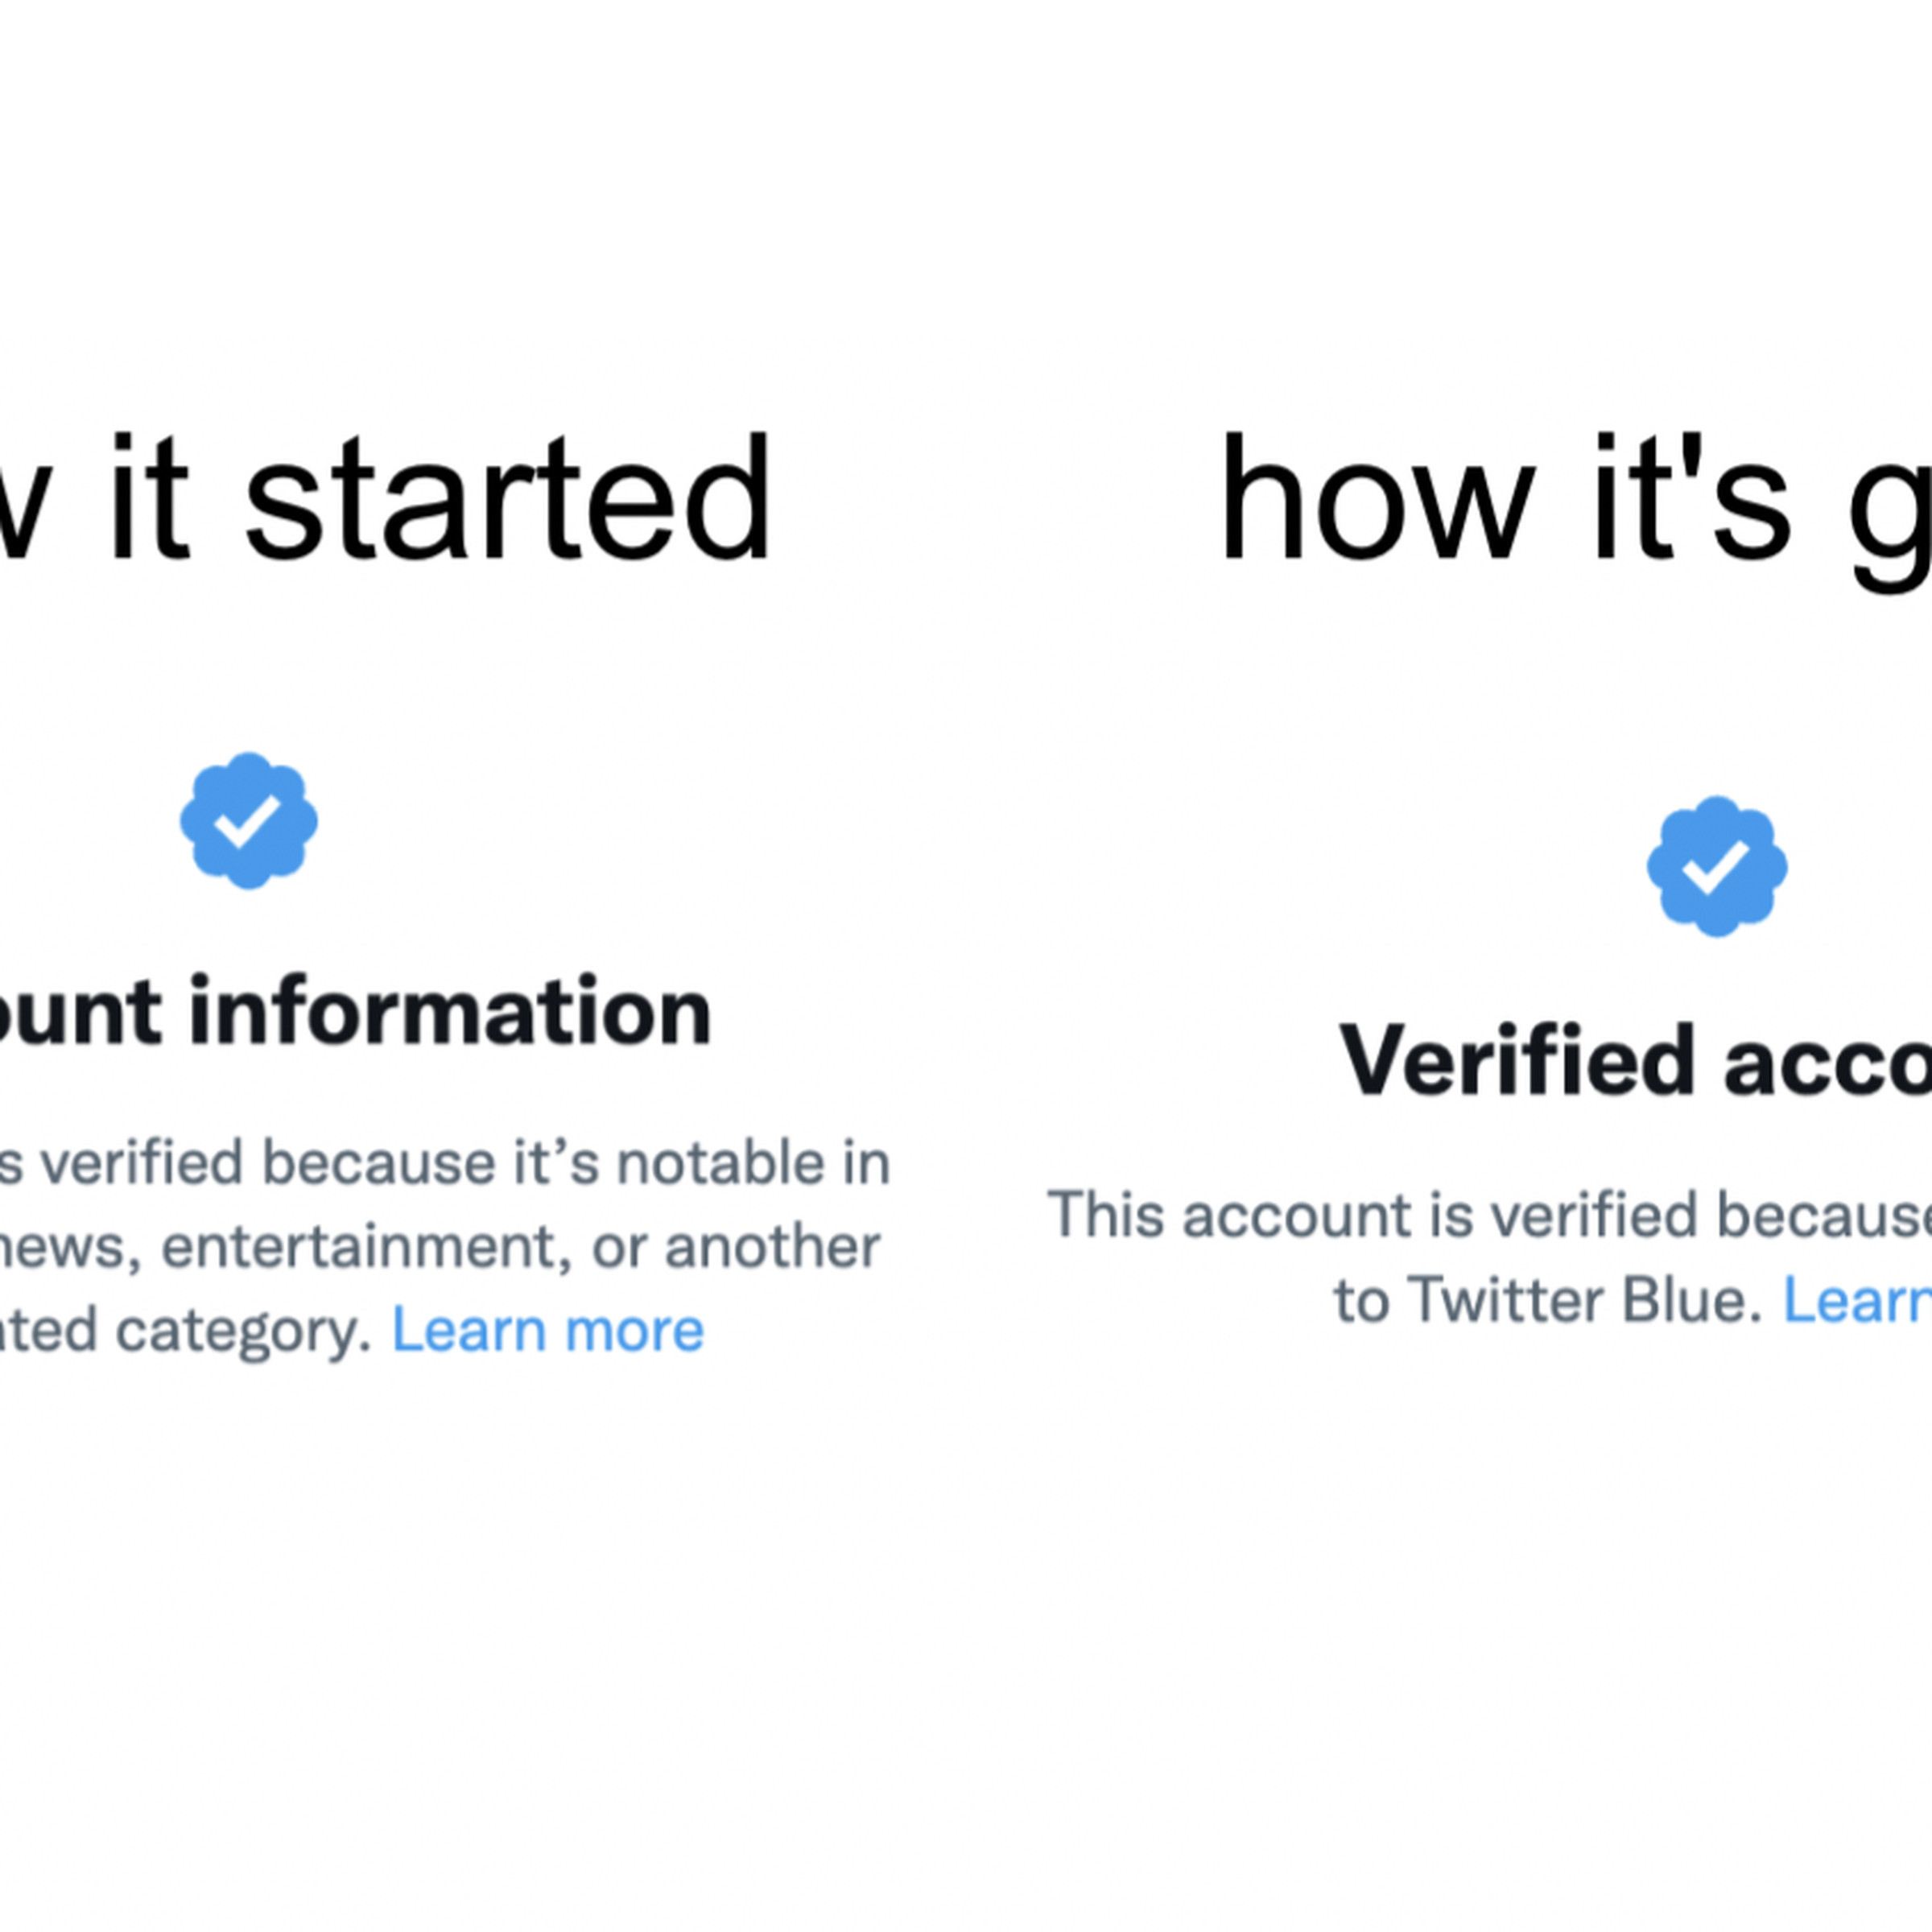 A screenshot of Twitter’s verification context labels.